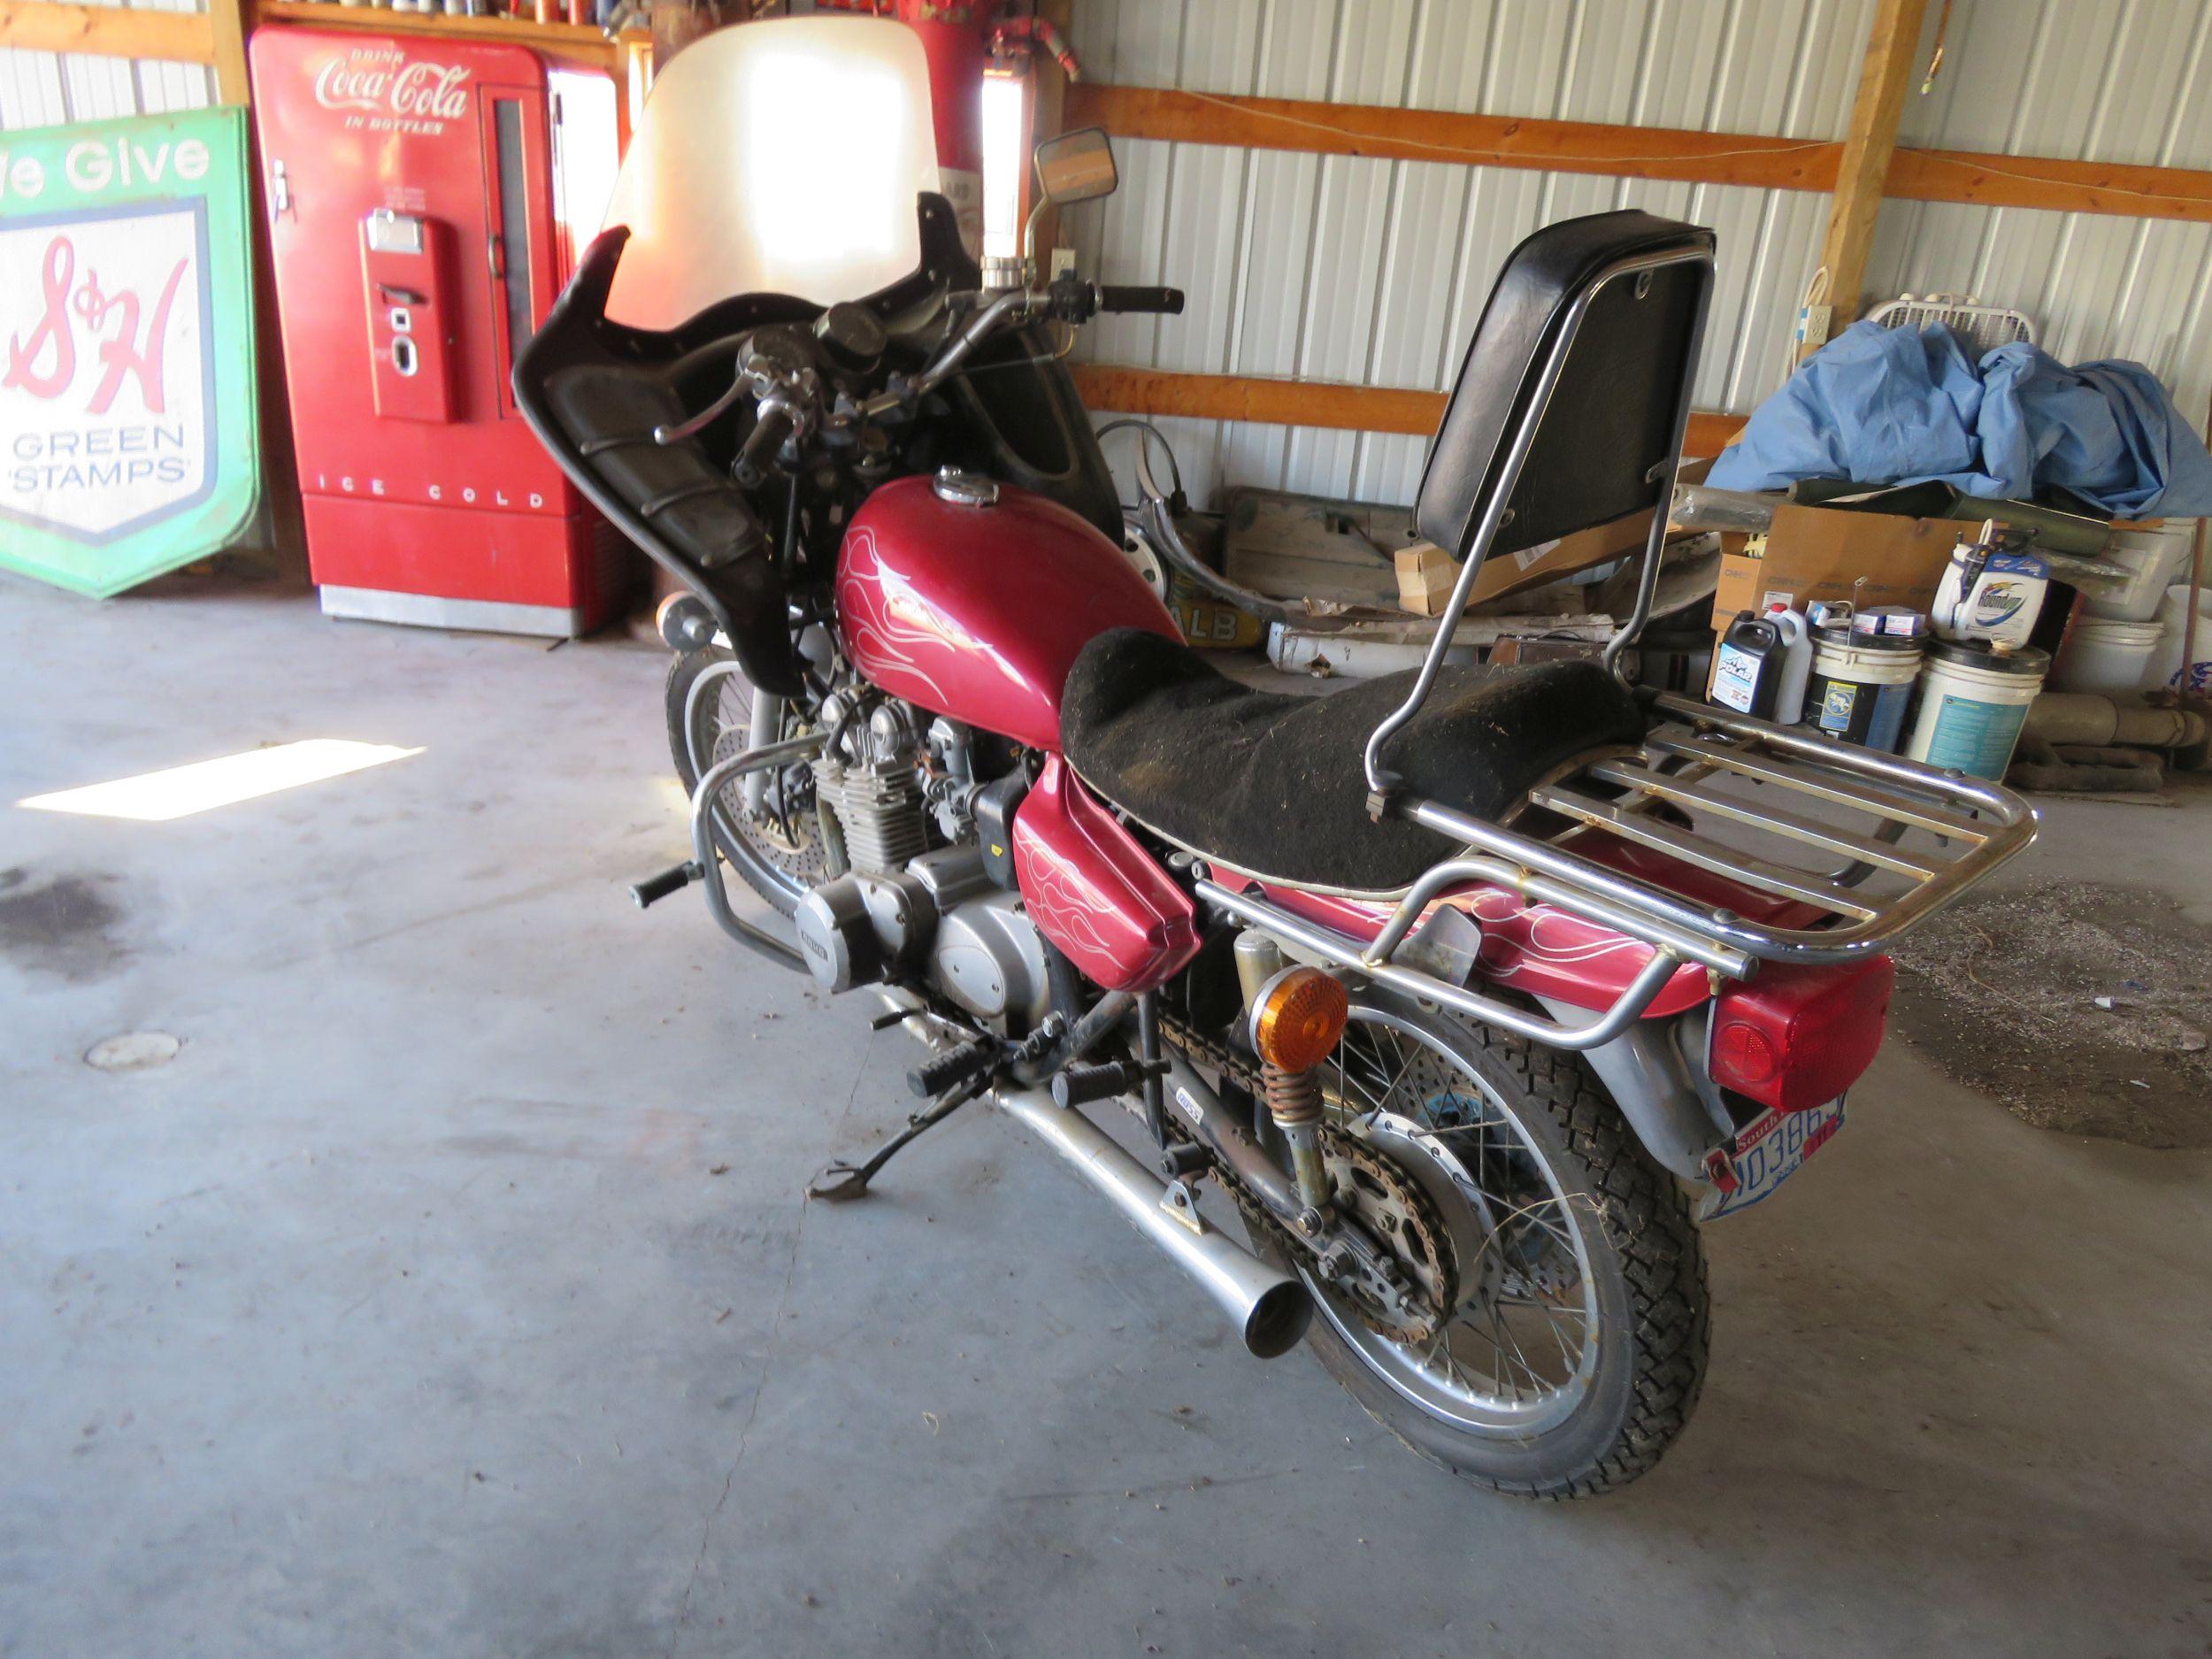 1977 Kawasaki Motorcycle